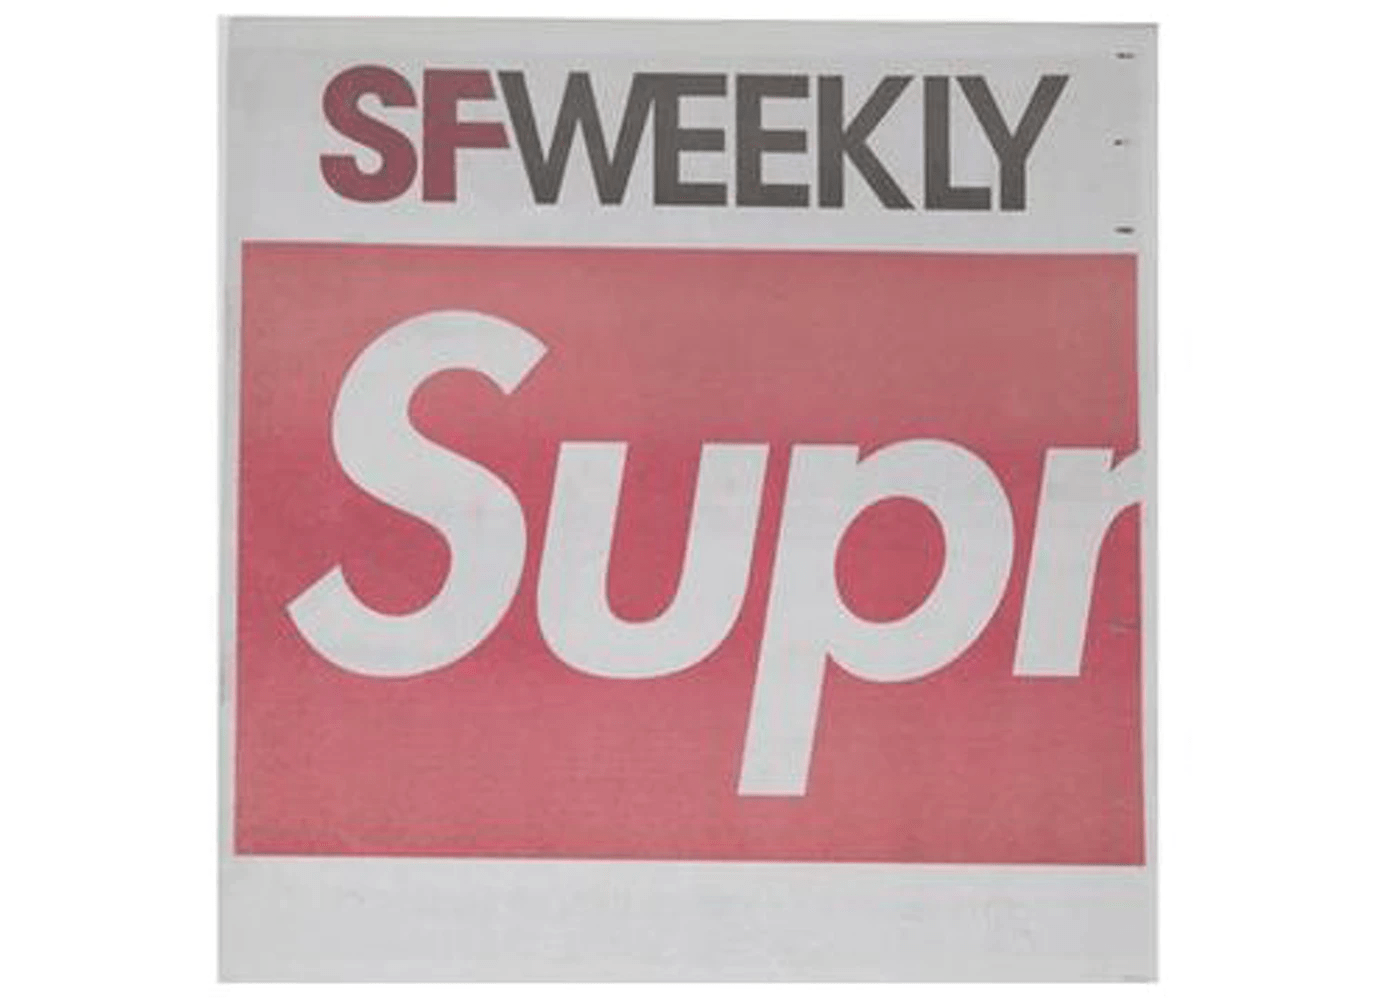 Supreme SF Weekly Newspaper Red